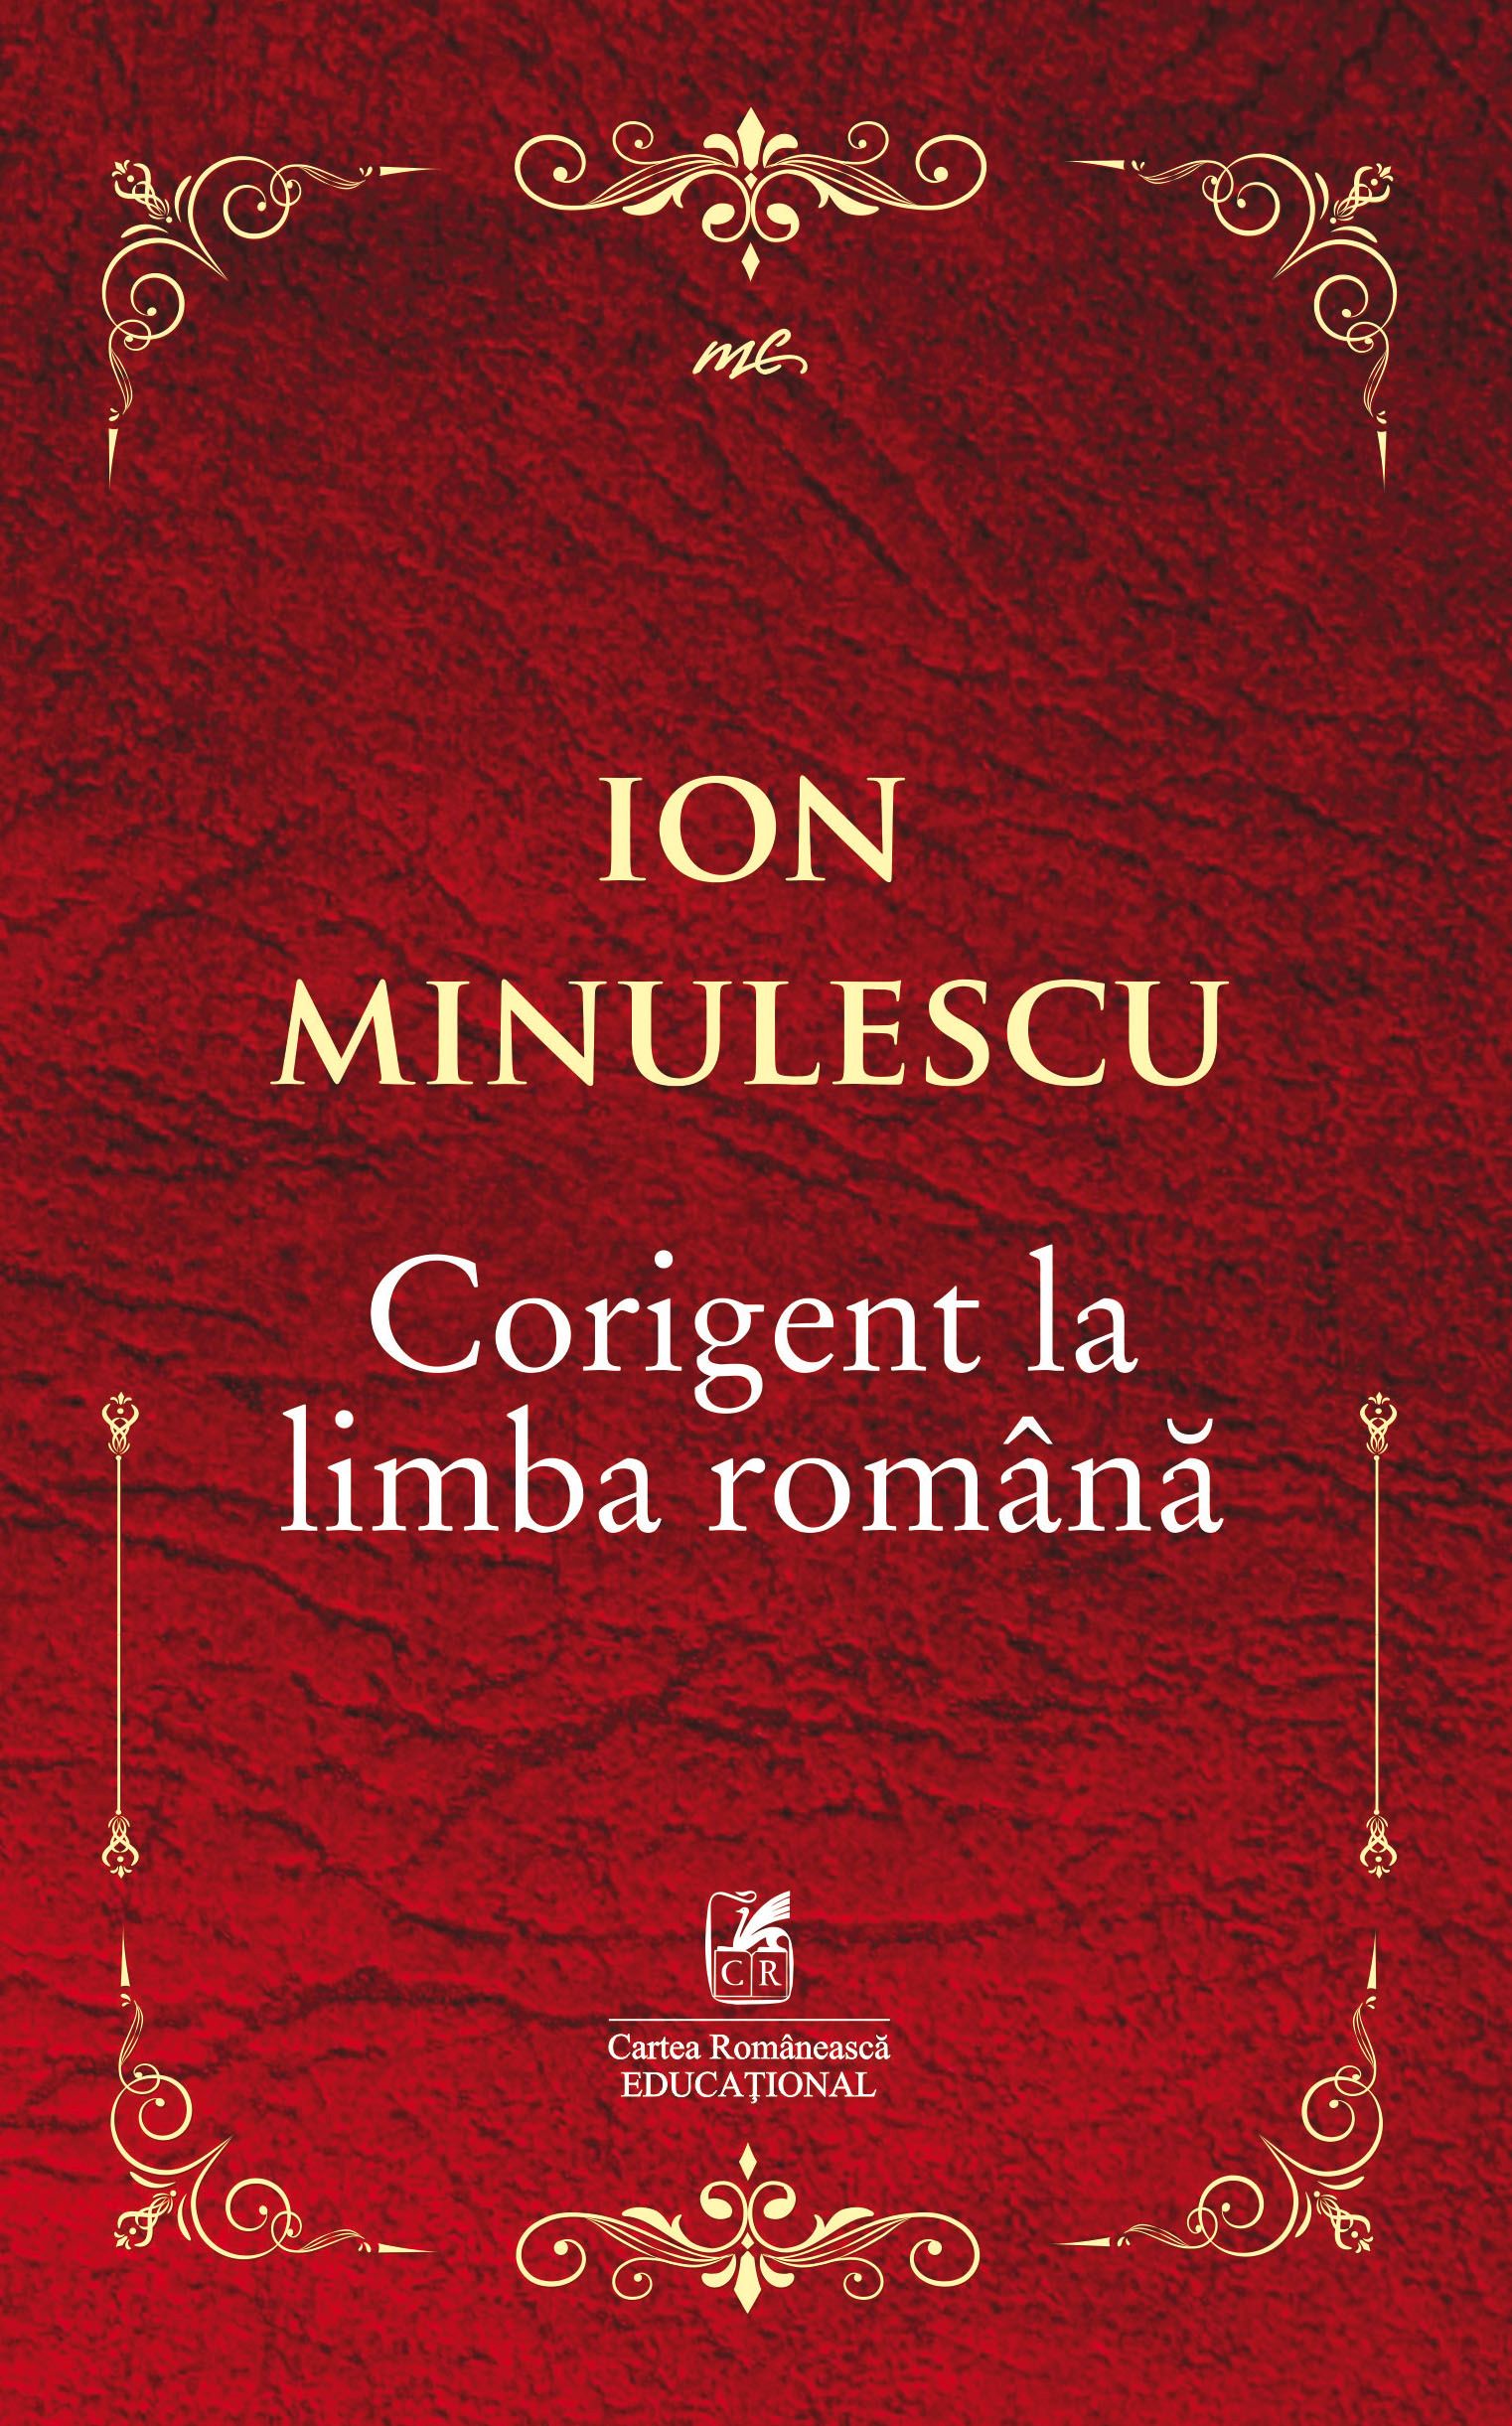 Corigent la limba romana | Ion Minulescu Cartea Romaneasca educational imagine noua